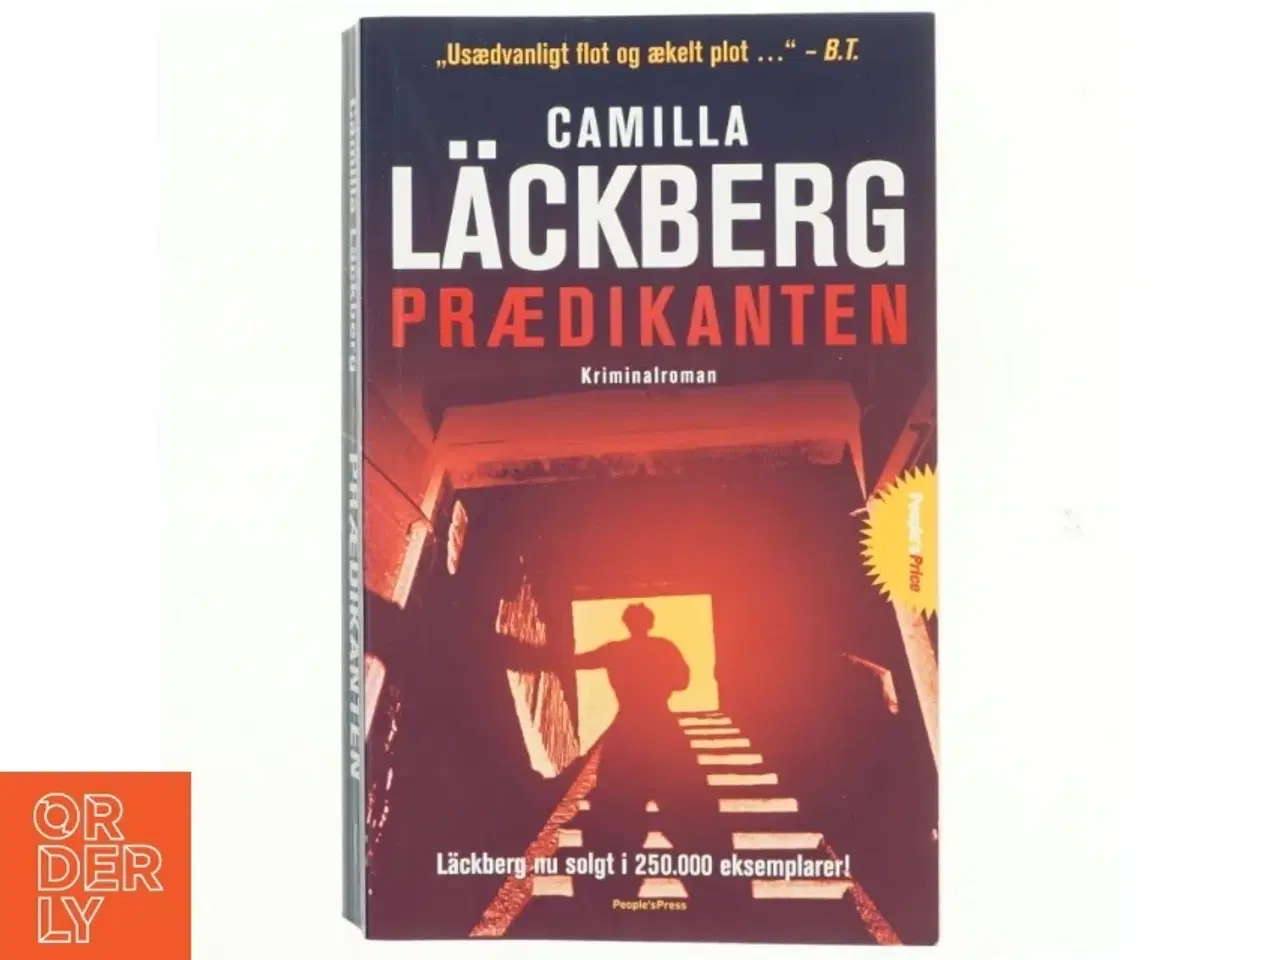 Billede 1 - Preacher (Predikanten - Dansk/Danish)- Import af Camilla Lackberg (Bog)